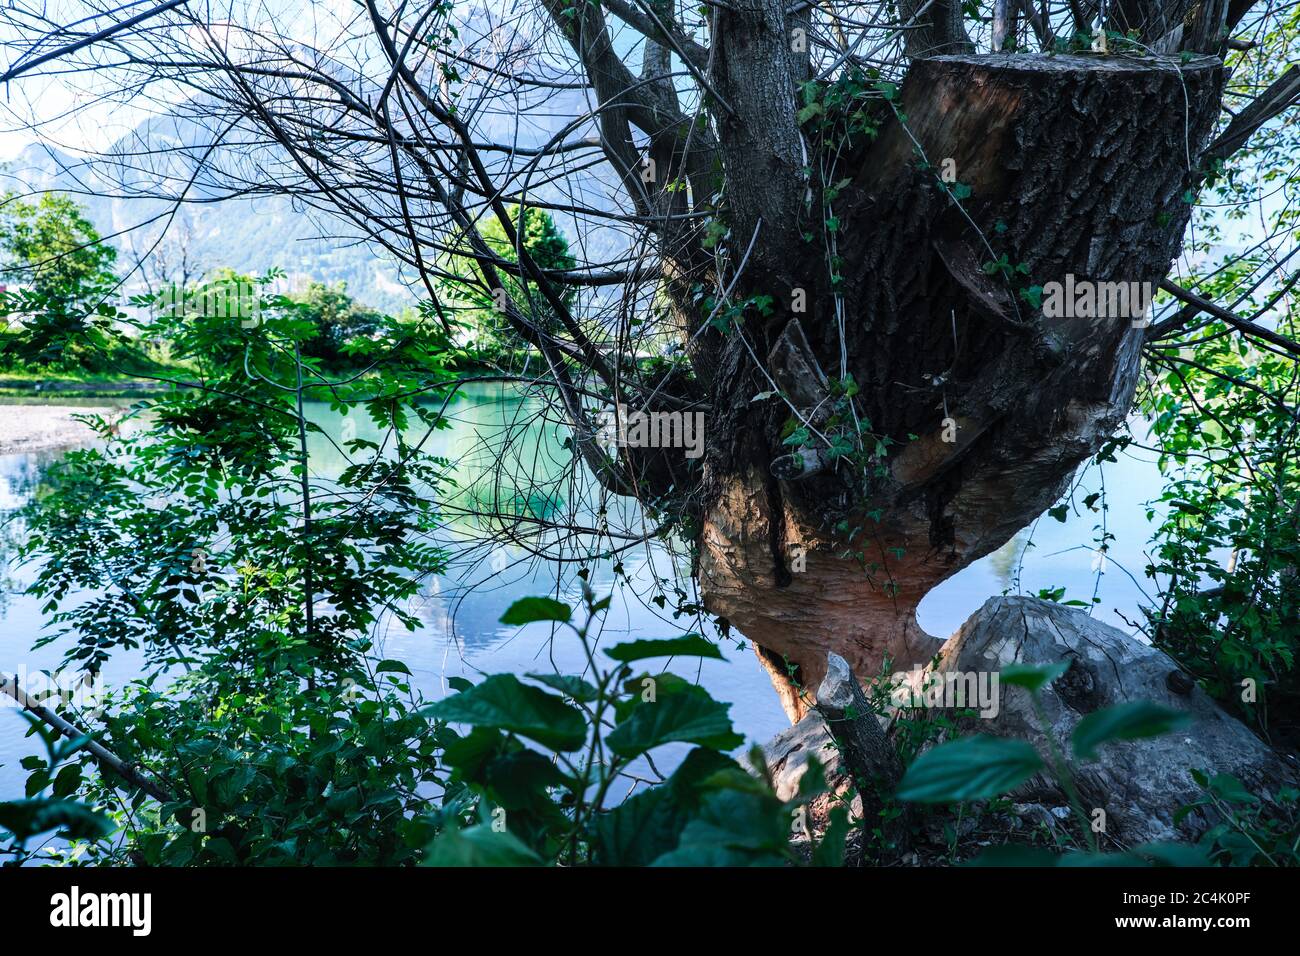 Europe Swizerland, canton de Sargans, Wangs en été, atmosphère nocturne, dégâts d'un castor sur un arbre Banque D'Images